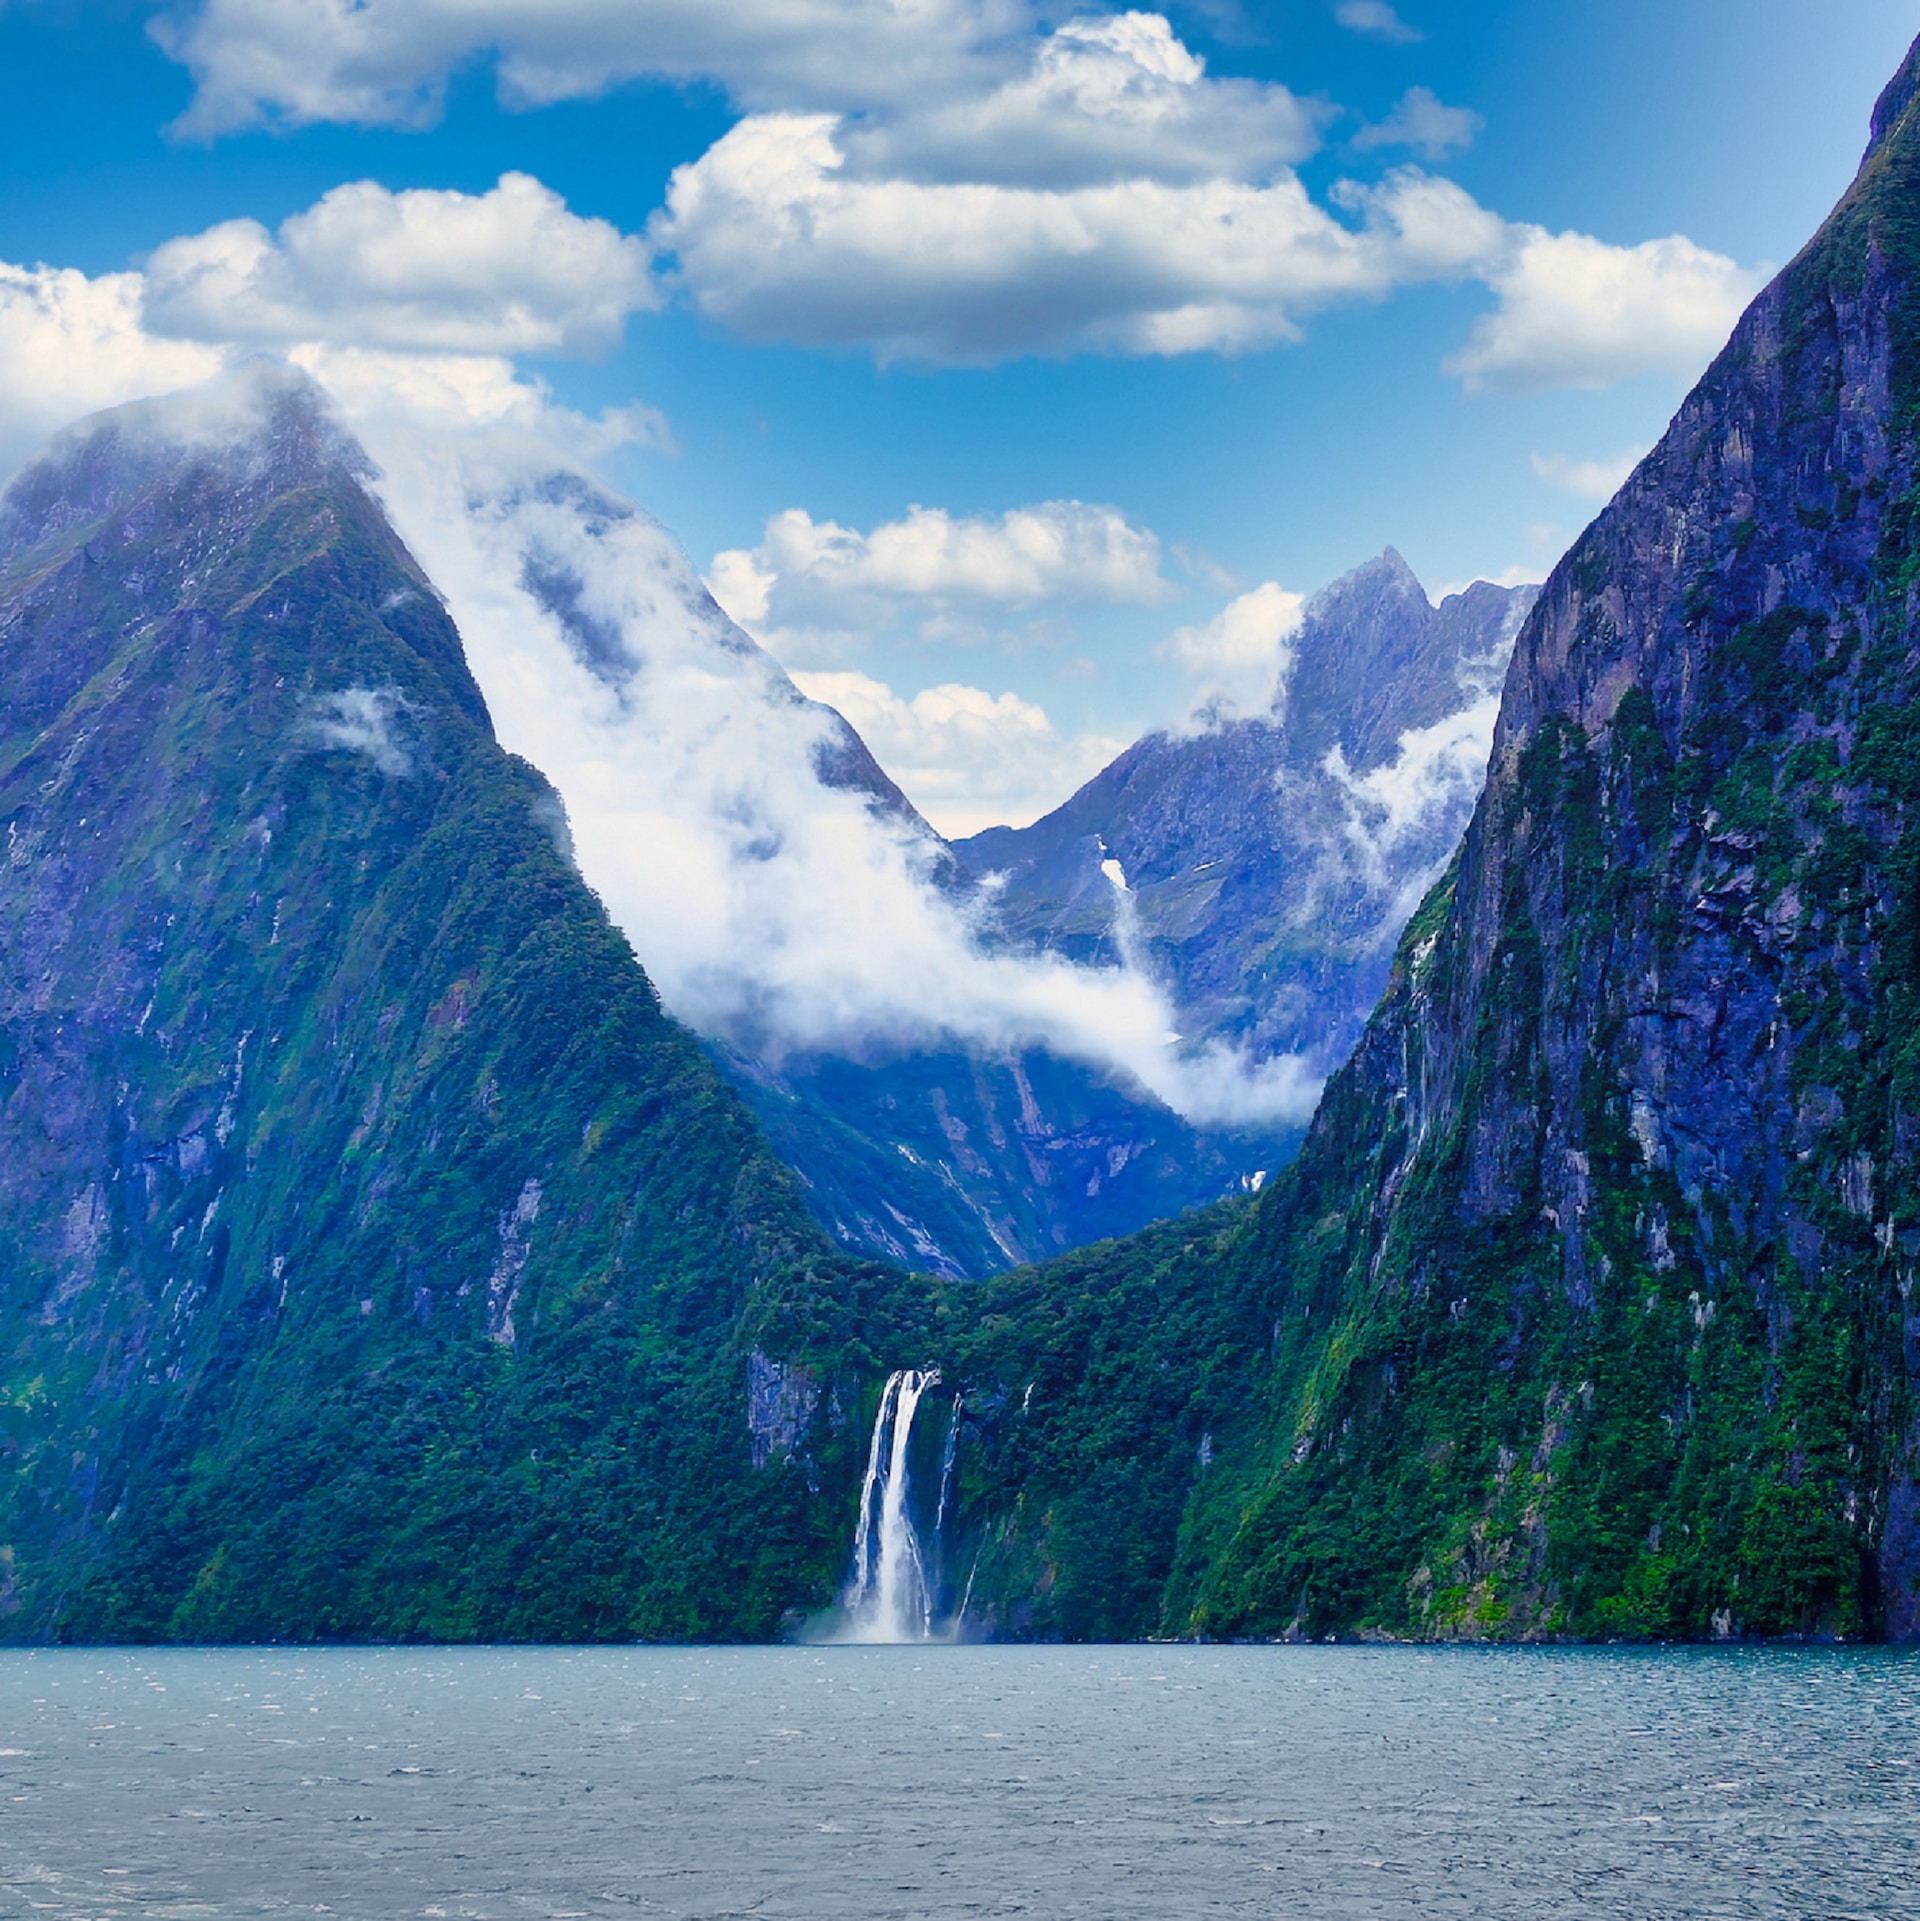 Chute d'eau à Millford Sound, Nouvelle-Zélande (photo: Evgeniy Alyoshin)